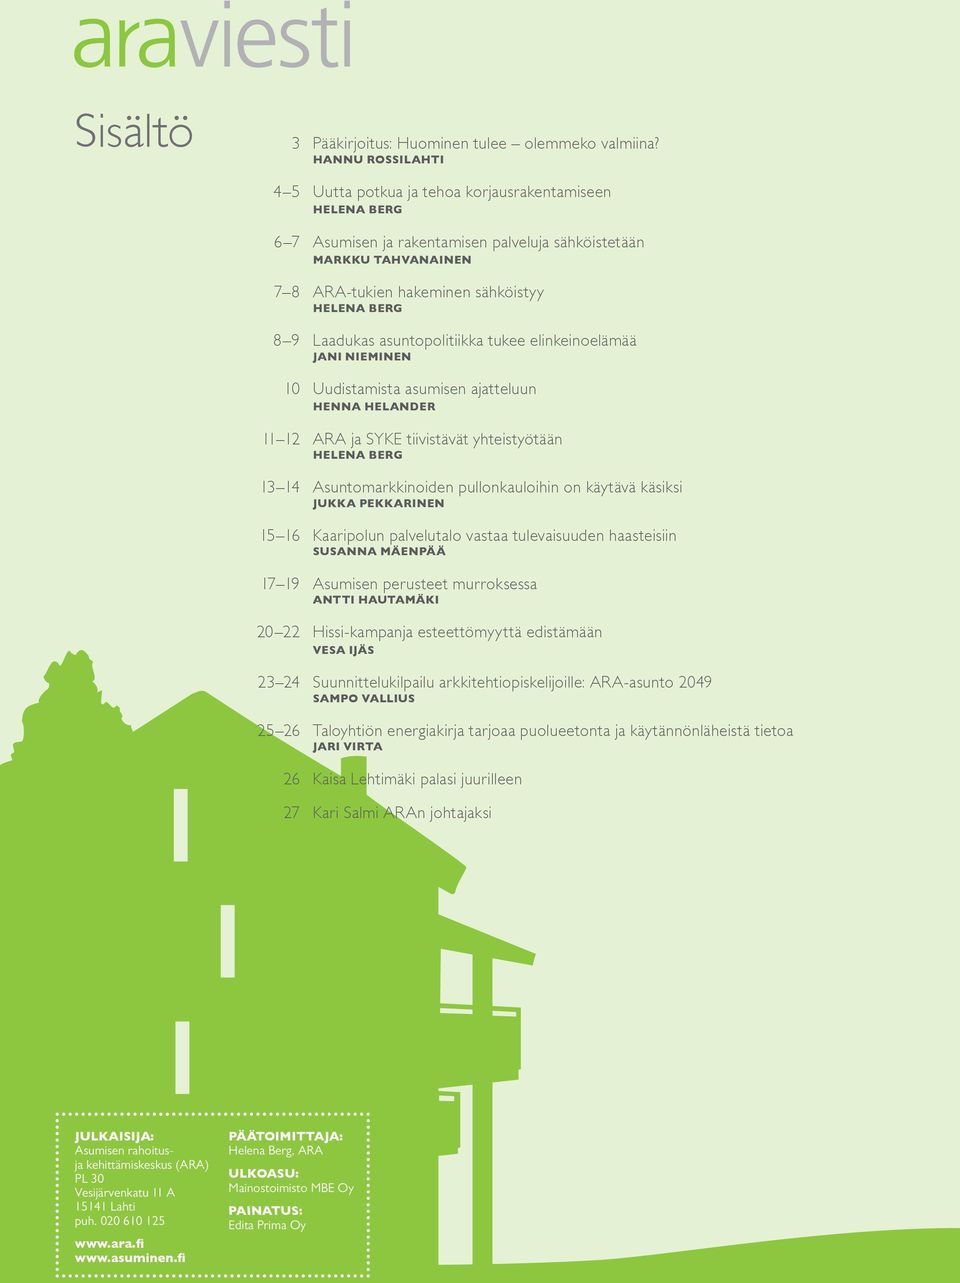 Laadukas asuntopolitiikka tukee elinkeinoelämää jani nieminen 10 Uudistamista asumisen ajatteluun henna helander 11 12 ARA ja SYKE tiivistävät yhteistyötään helena BERG 13 14 Asuntomarkkinoiden